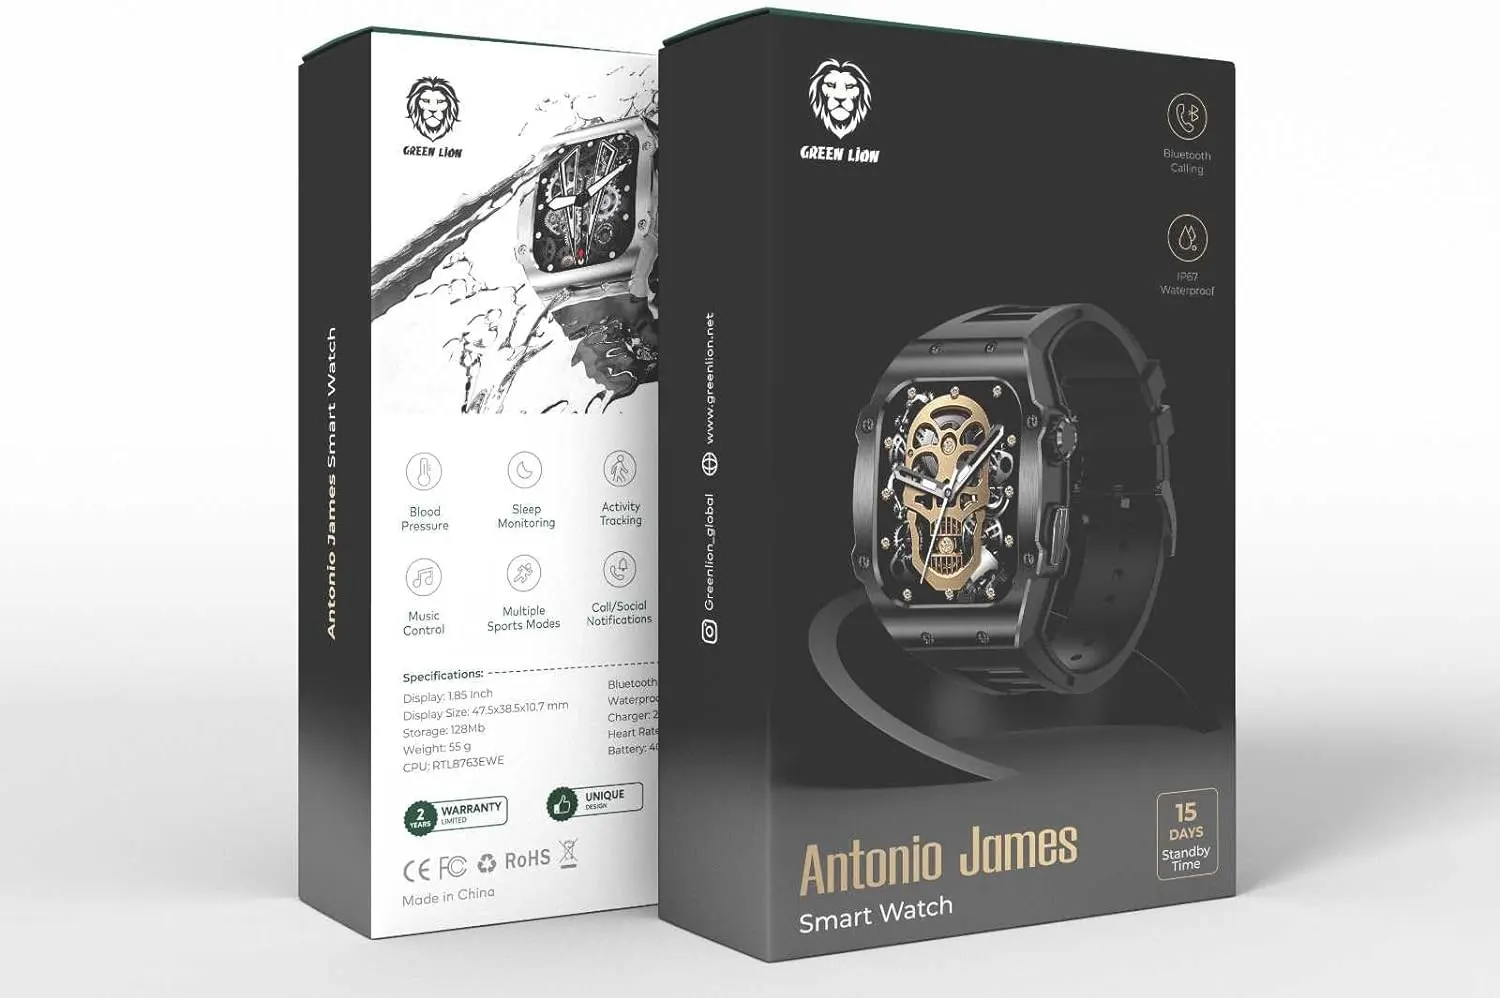 ساعت هوشمند گرین لاین Green Lion Antonio James Smartwatch